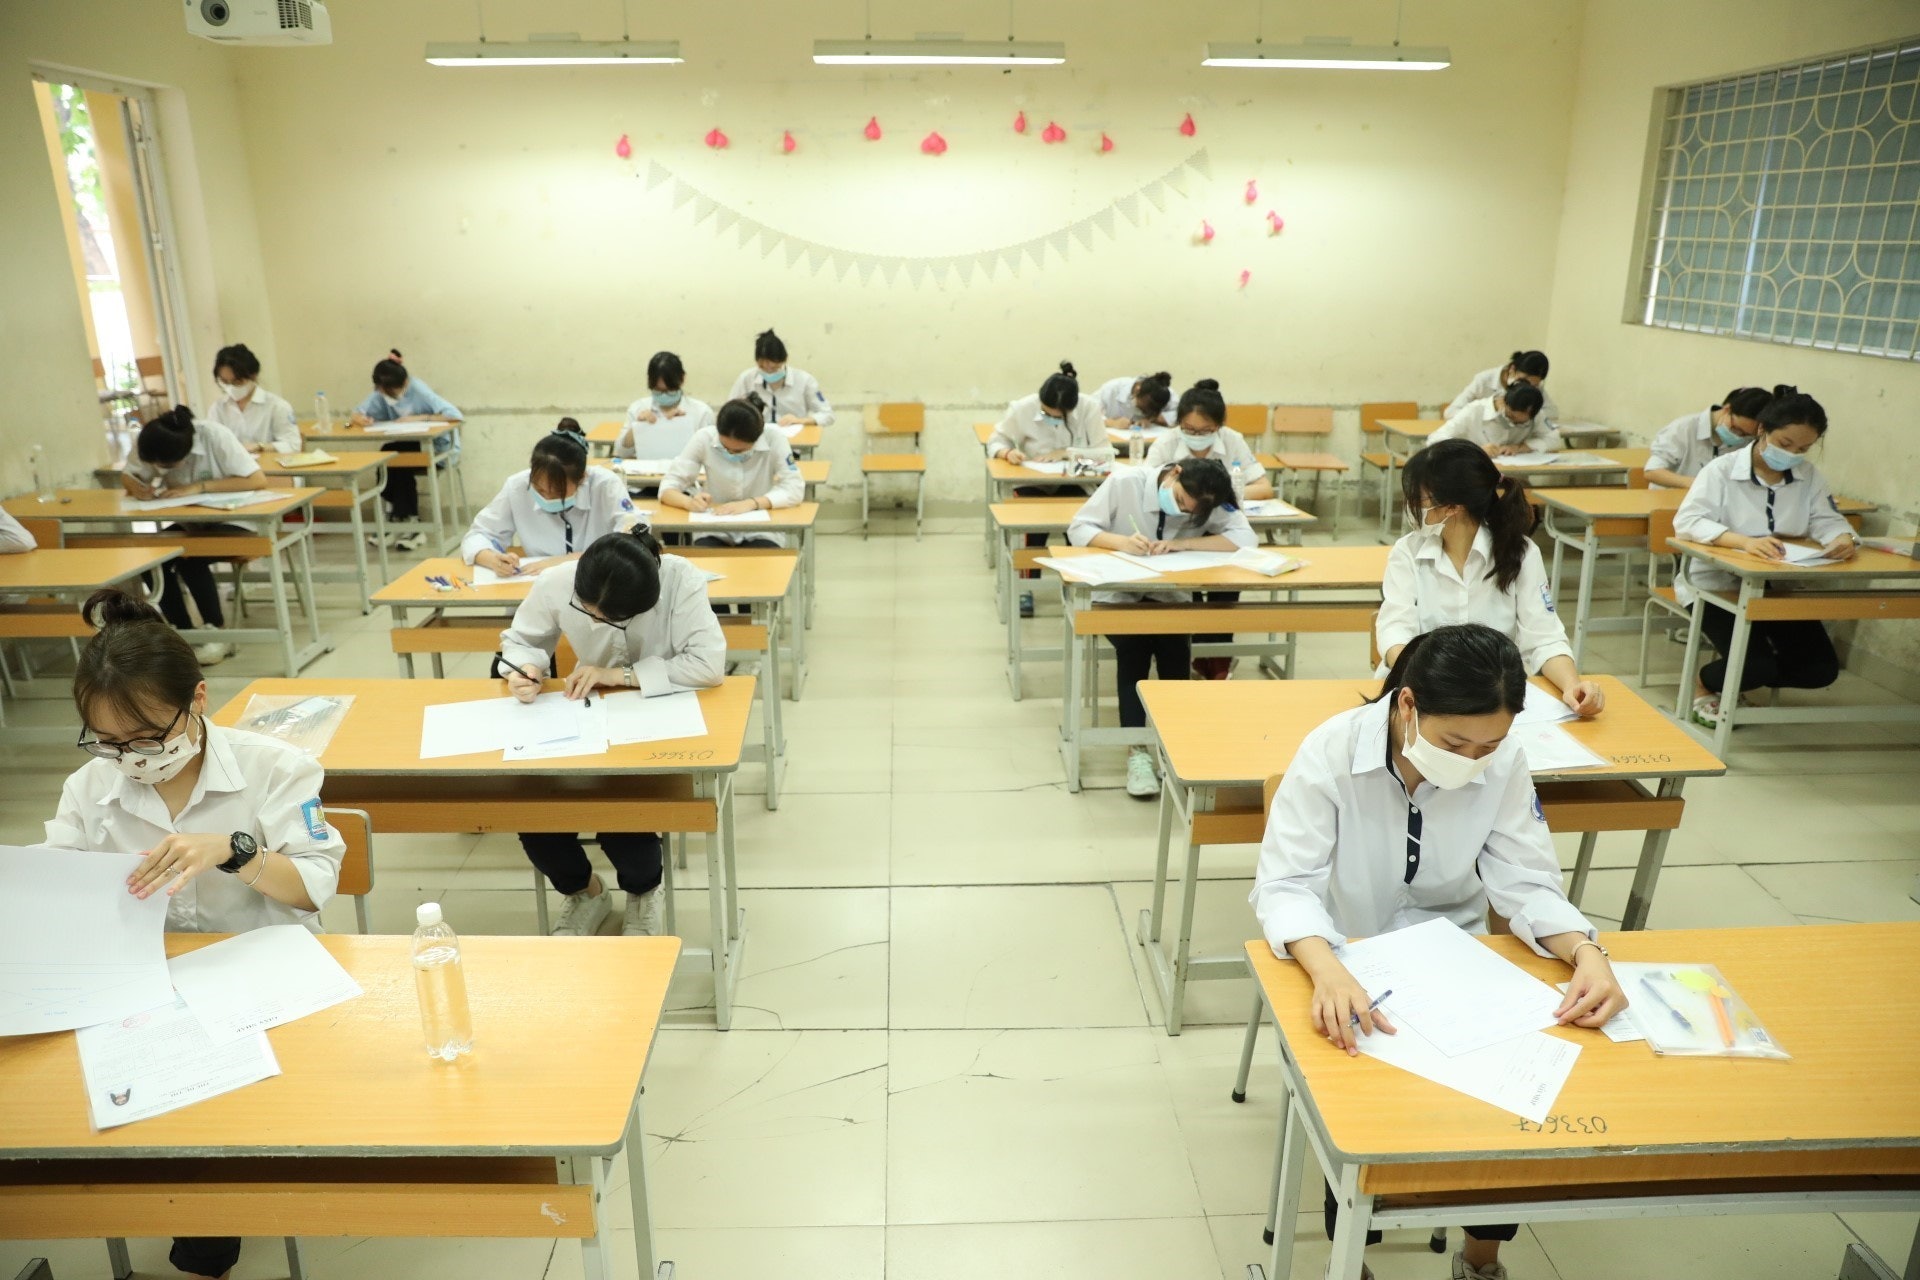 越南的職業教育一般介乎一至三年不等。(Getty)